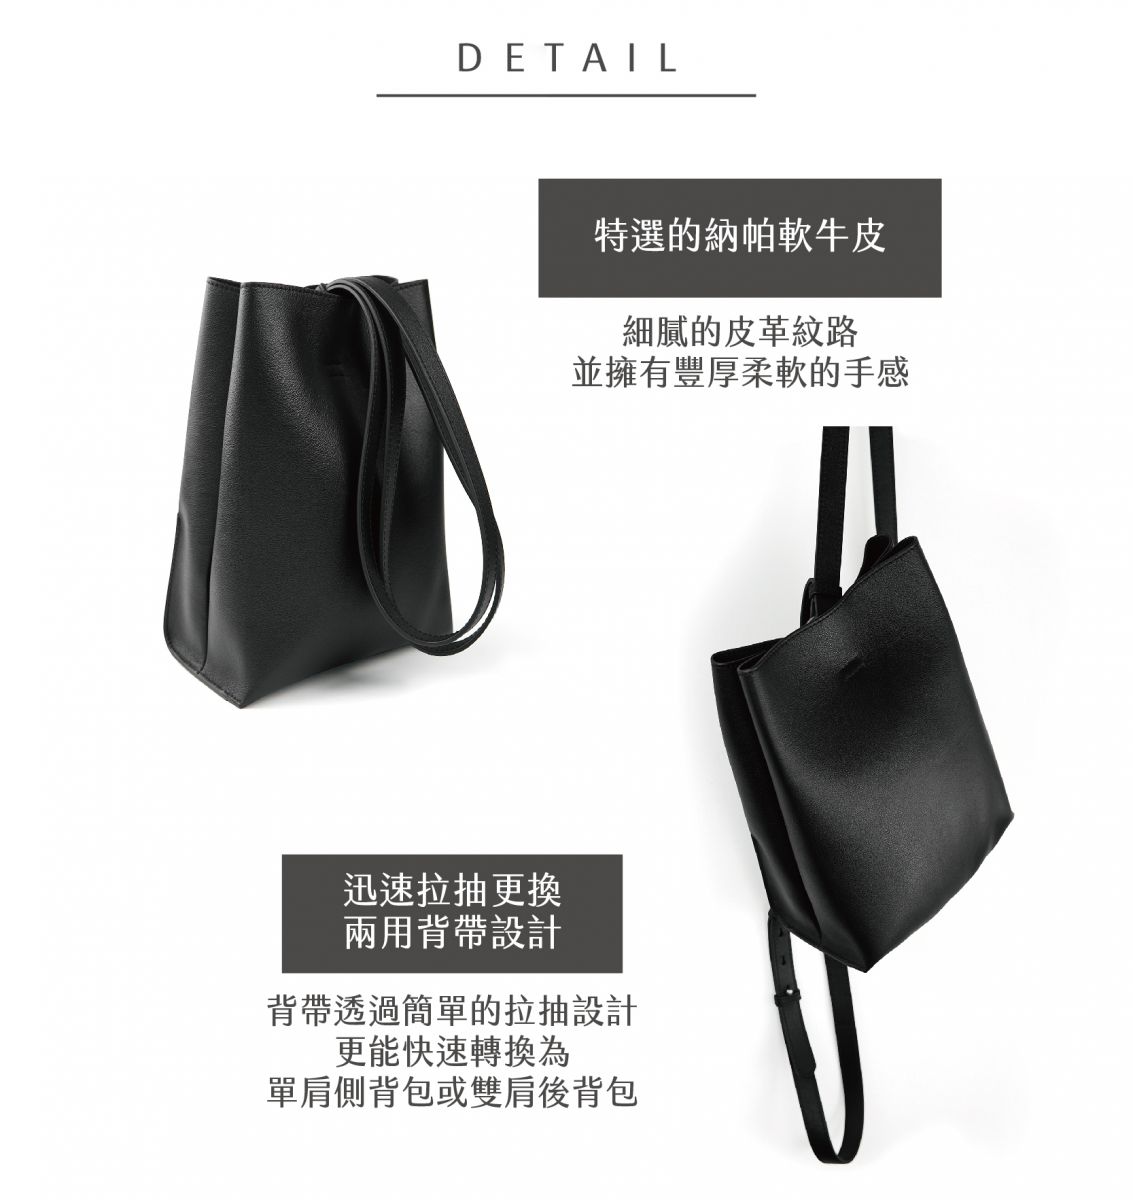 DTB-Half Rectangular Backpack 迷你兩用方形水桶後背包-黑色